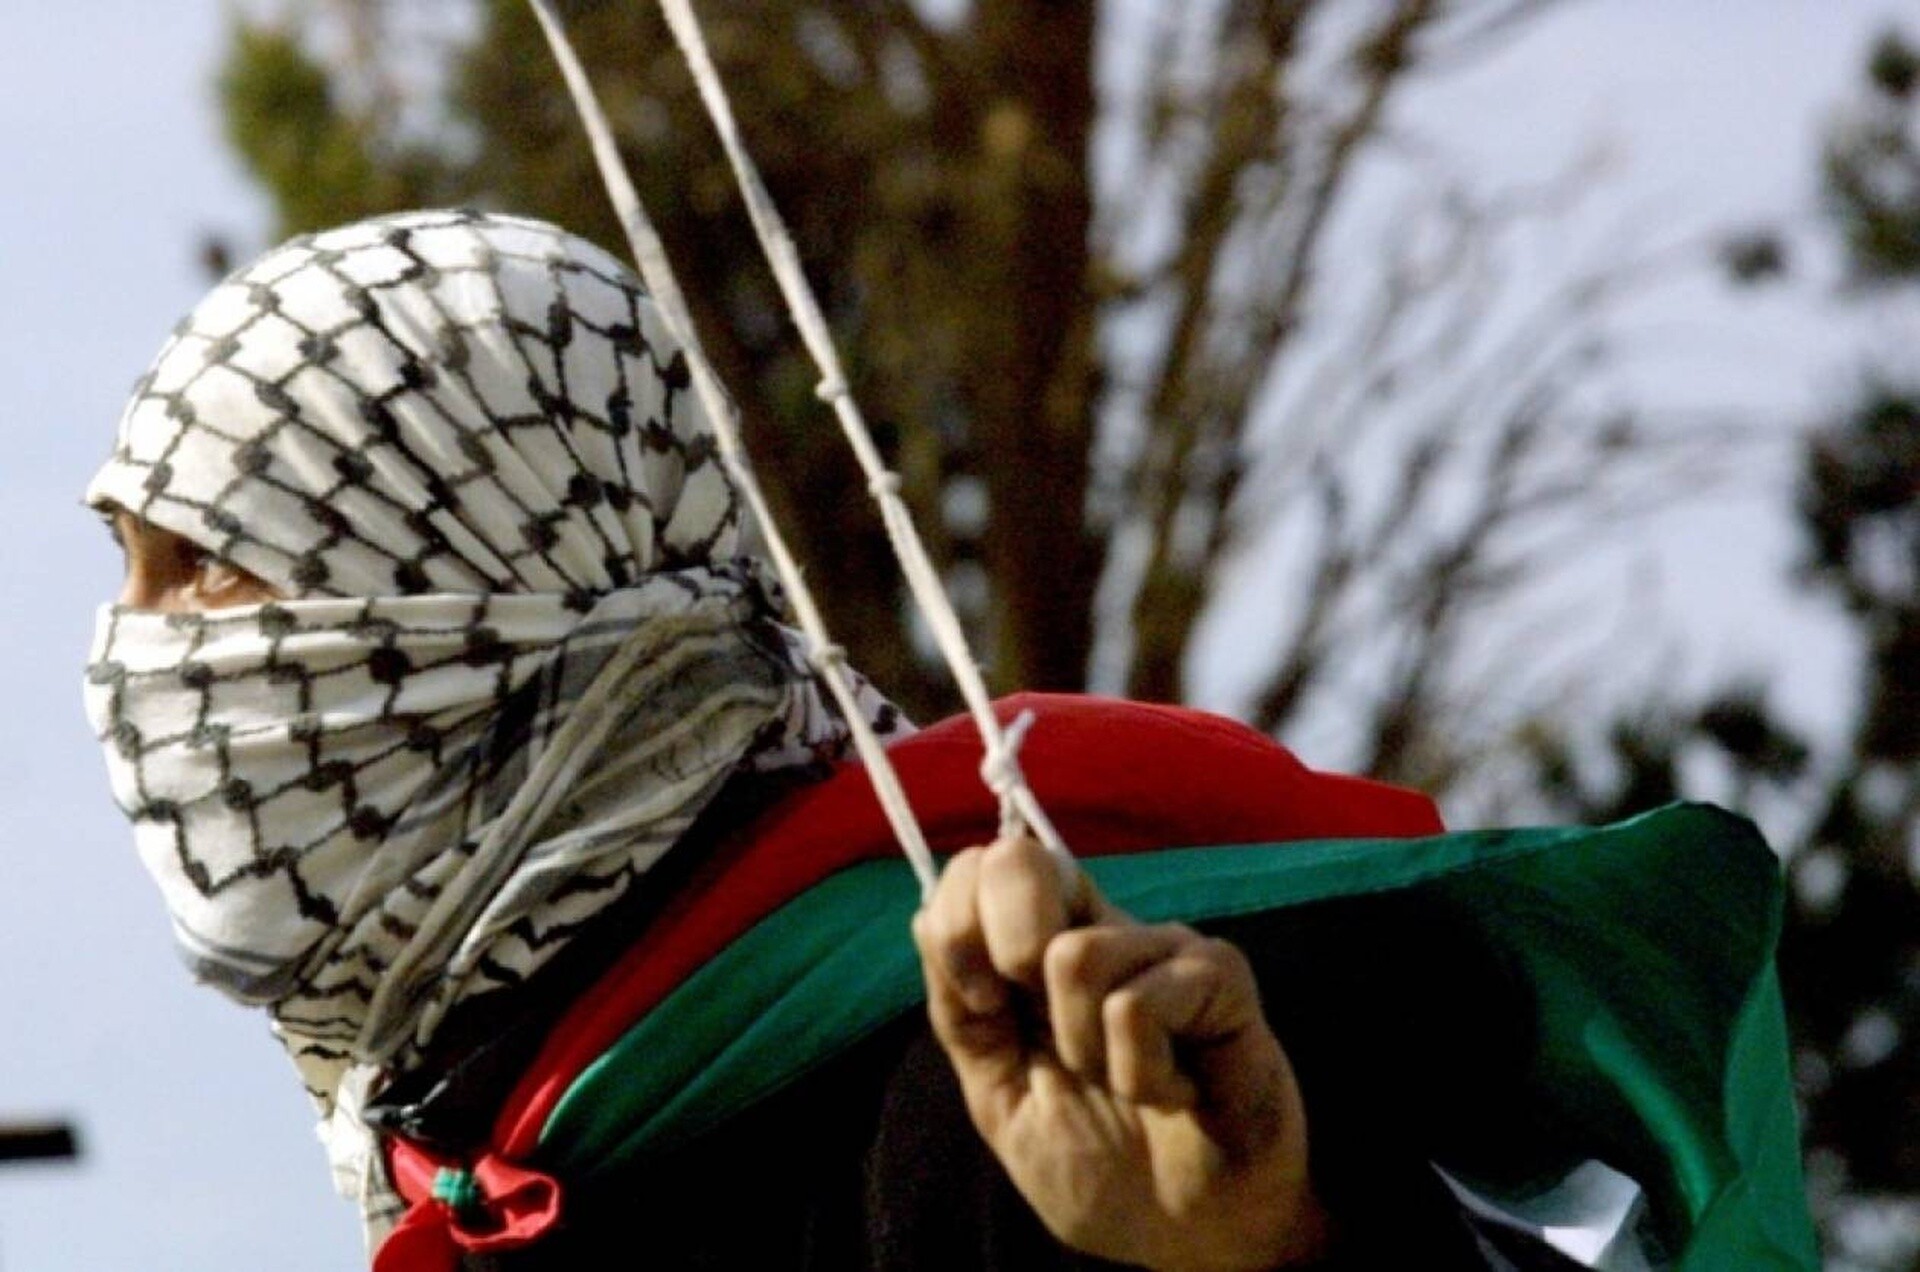 Τέσσερις ευρωπαϊκές χώρες ετοιμάζονται να αναγνωρίσουν παλαιστινιακό κράτος - Οργή από το Ισραήλ